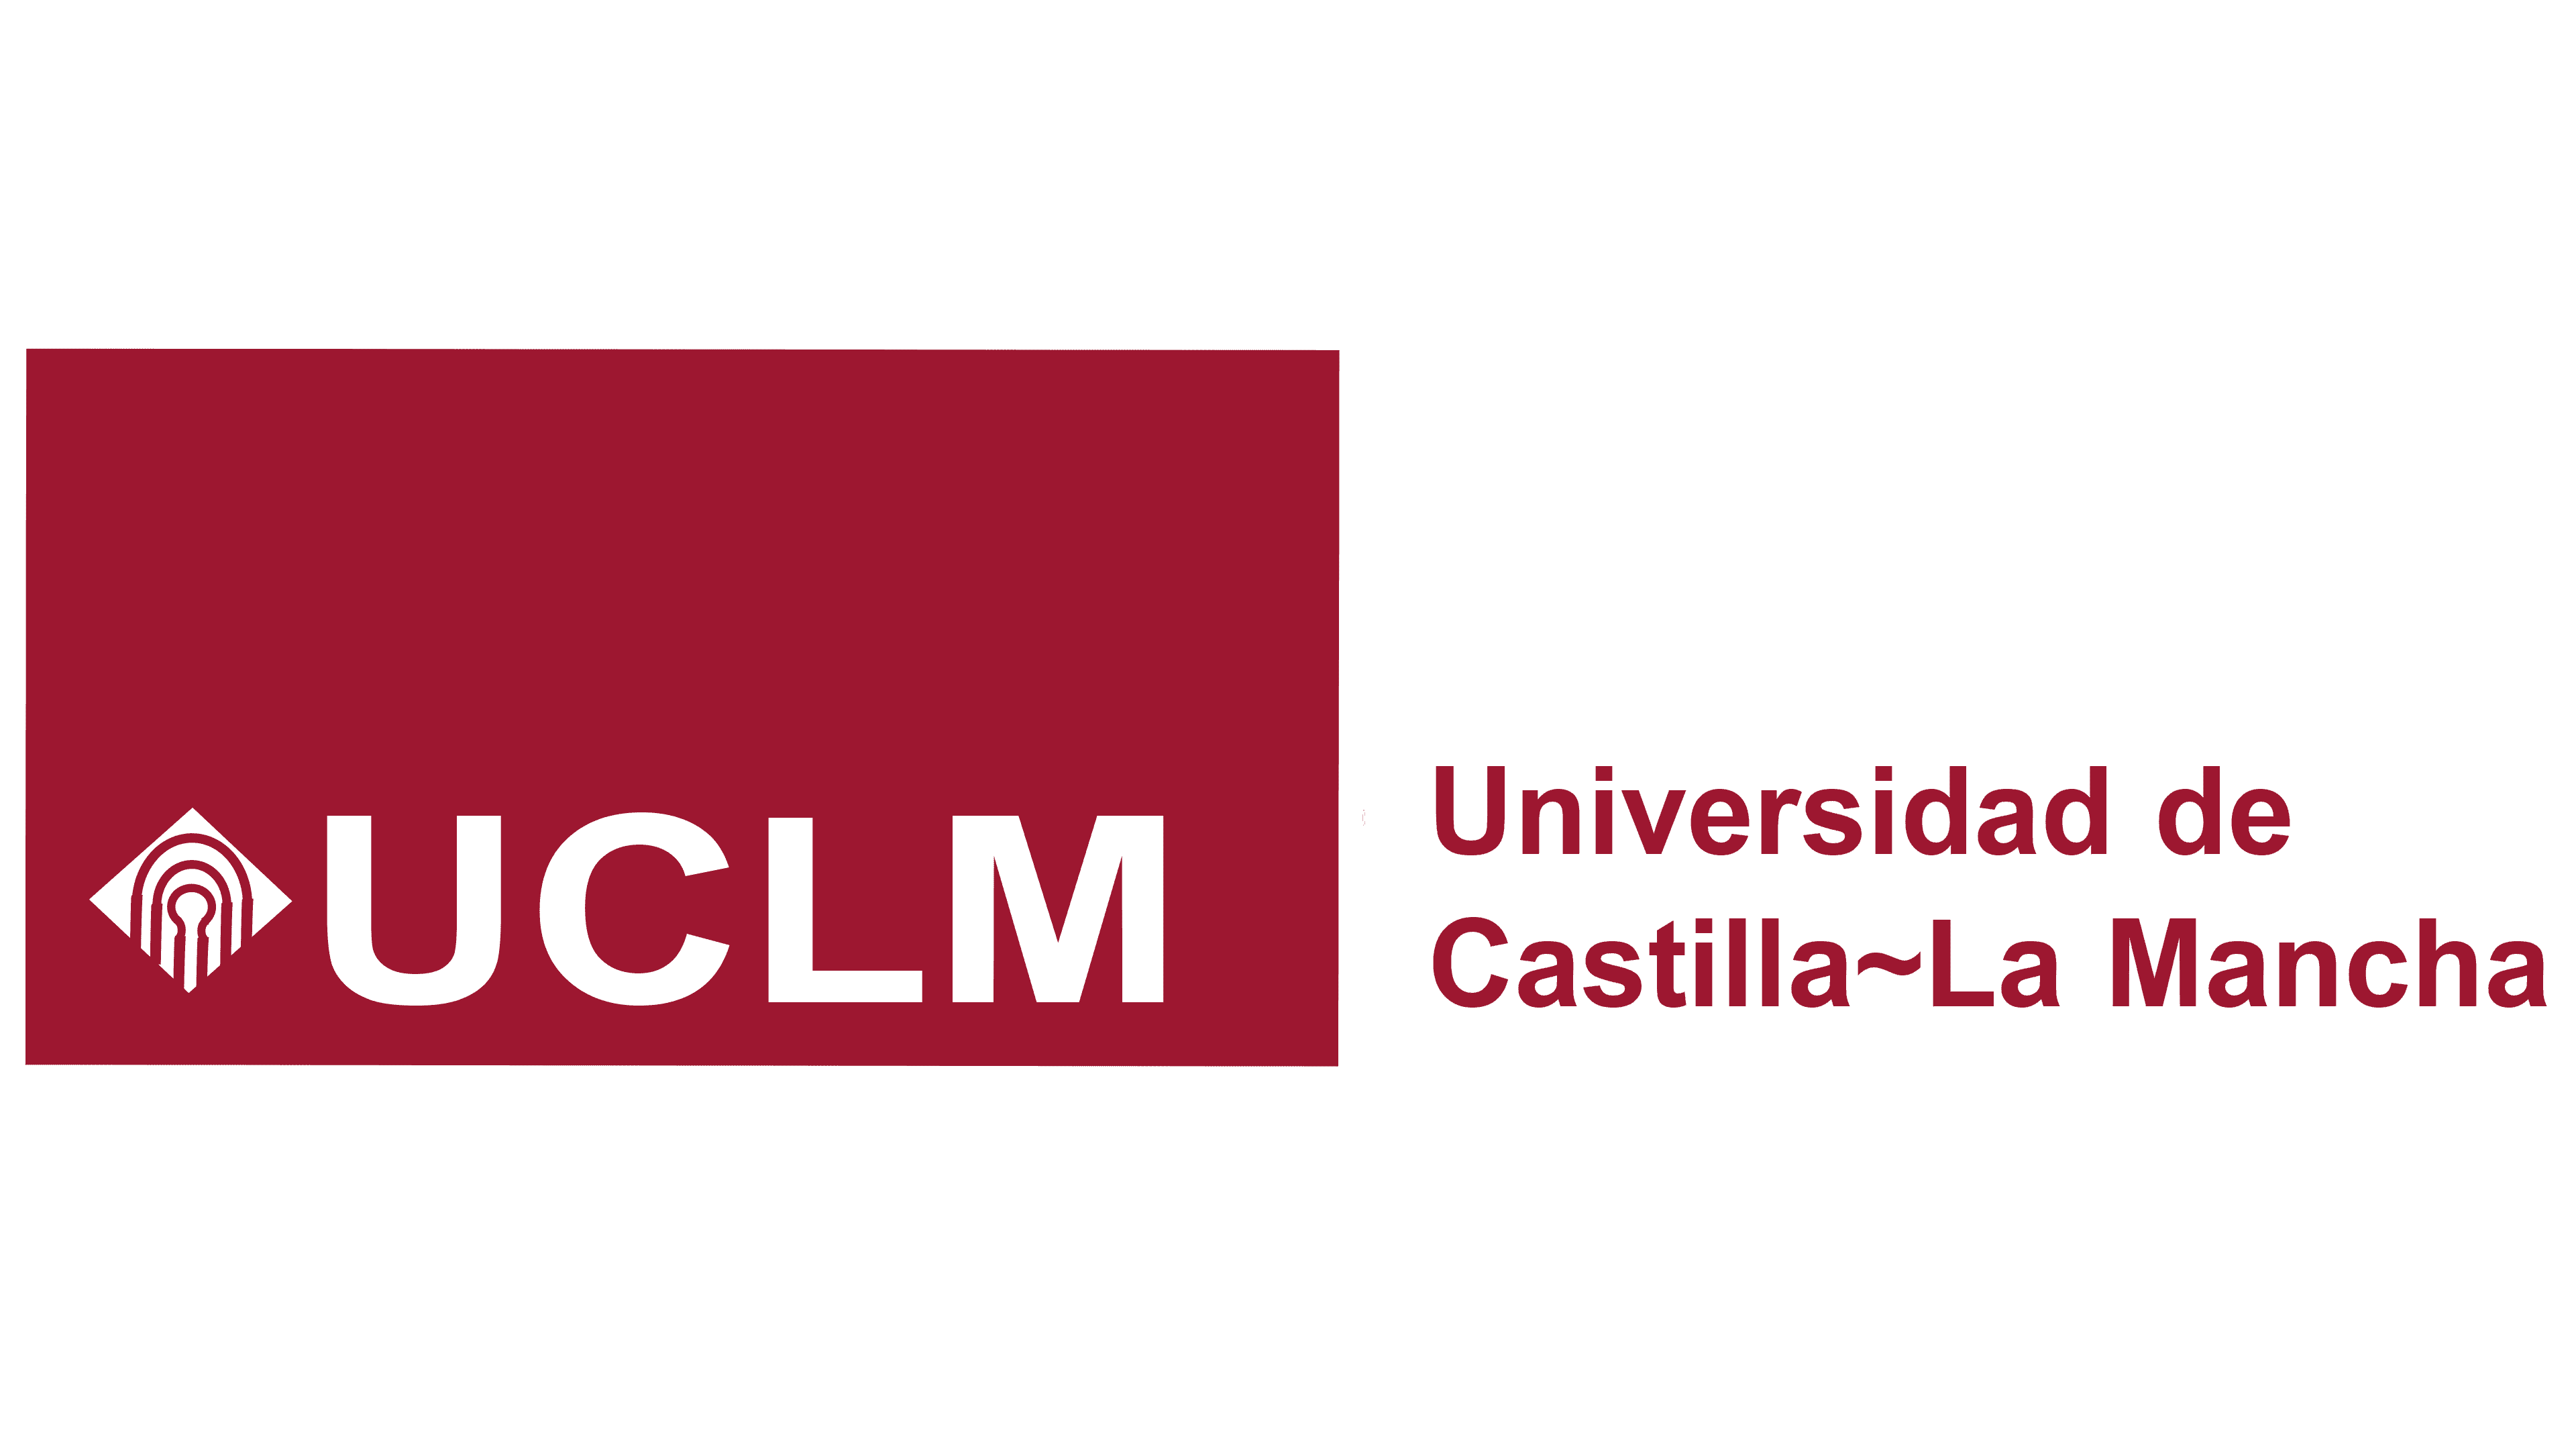 UCLM Logo